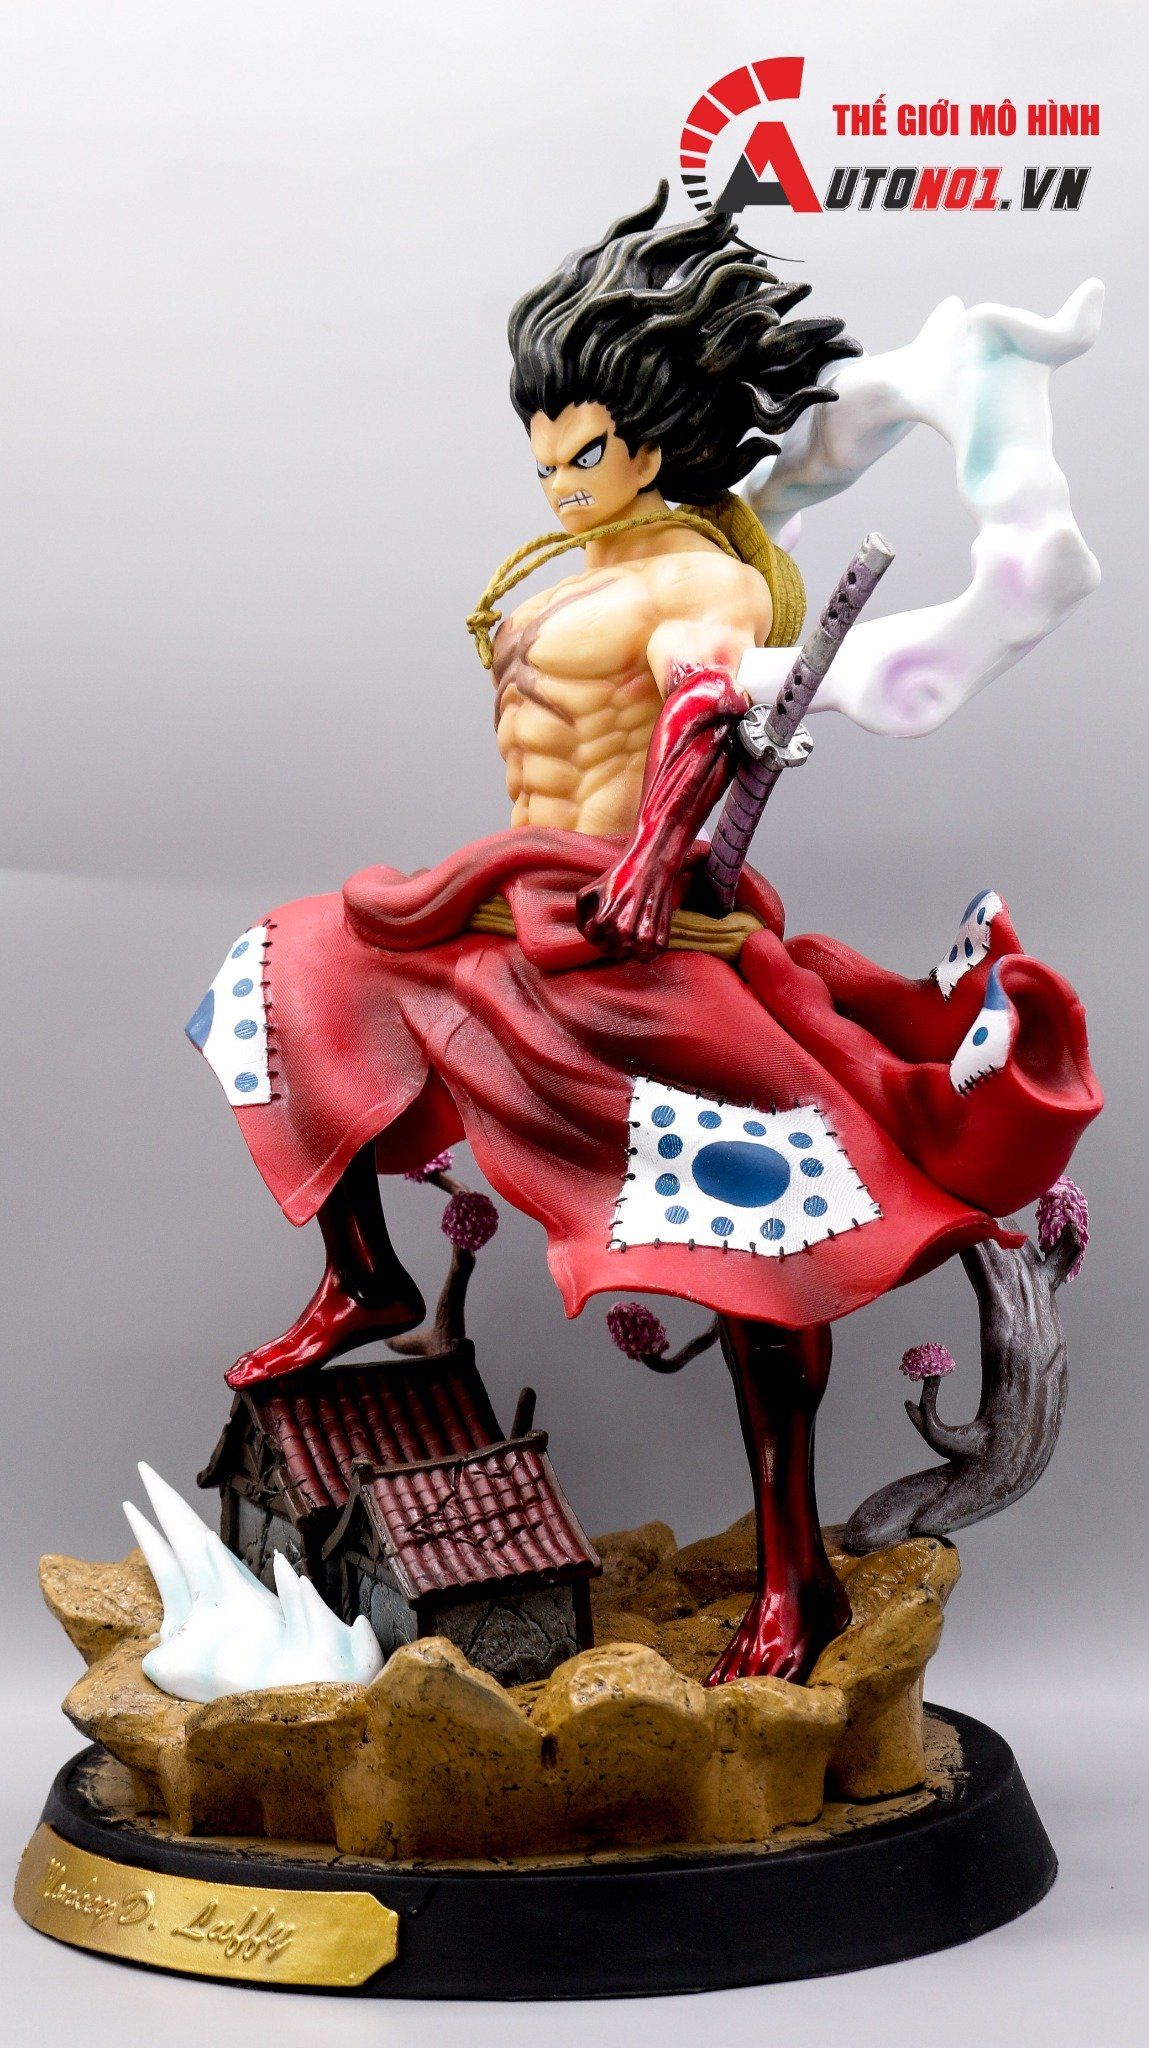 Mô hình nhân vật luffy Wano Quốc - One Piece - Giá Sendo khuyến mãi:  279,000đ - Mua ngay! - Tư vấn mua sắm & tiêu dùng trực tuyến Bigomart